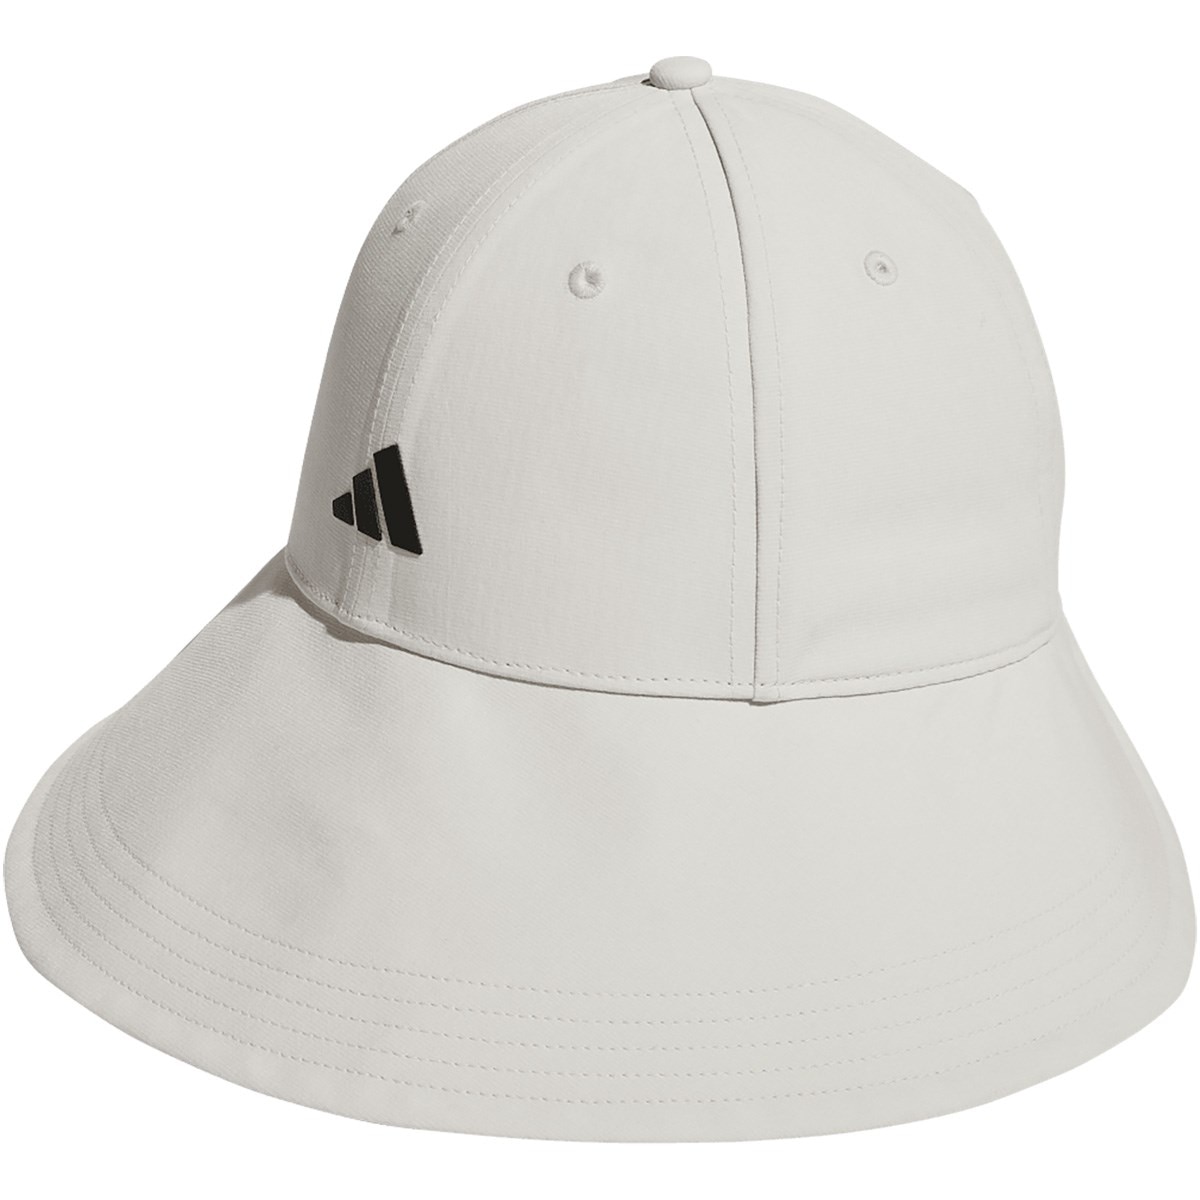 ワイドブリムハット レディス(【女性】その他帽子)|Adidas(アディダス) MGR57の通販 - GDOゴルフショップ(0000694009)